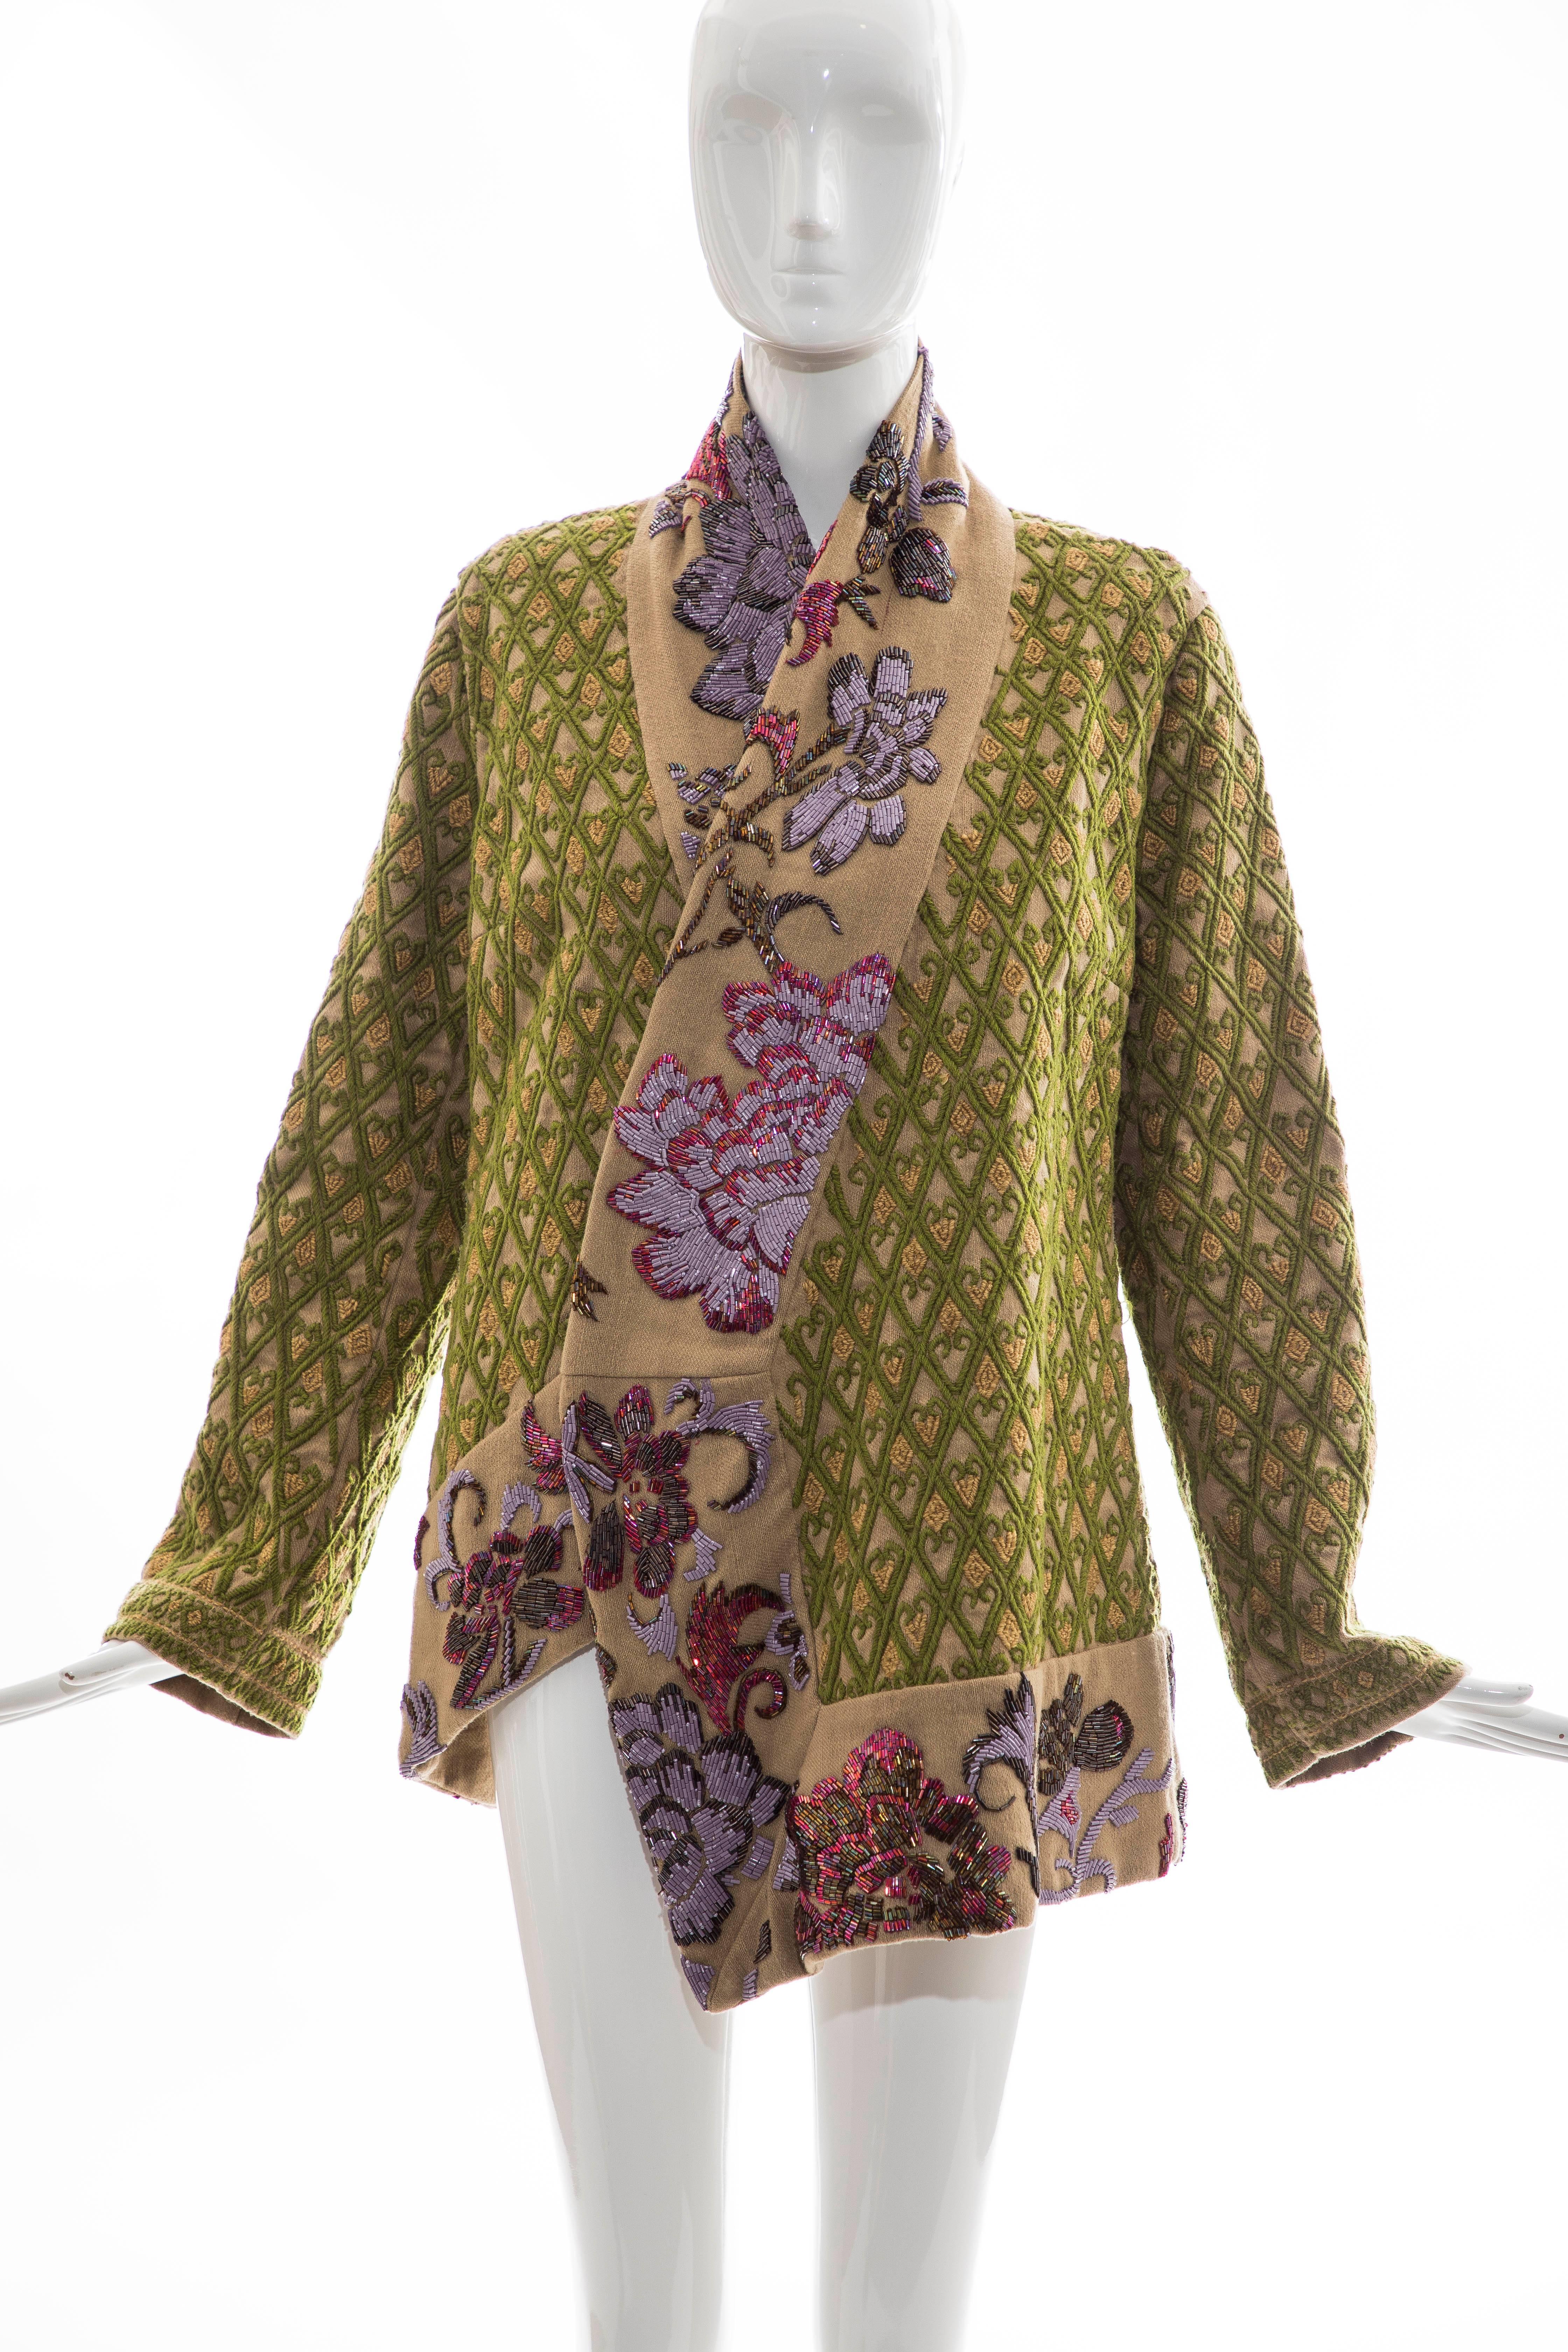 Dries Van Noten Runway Hemp Wool Floral Embroidered Beaded Jacket, Fall 2003 8